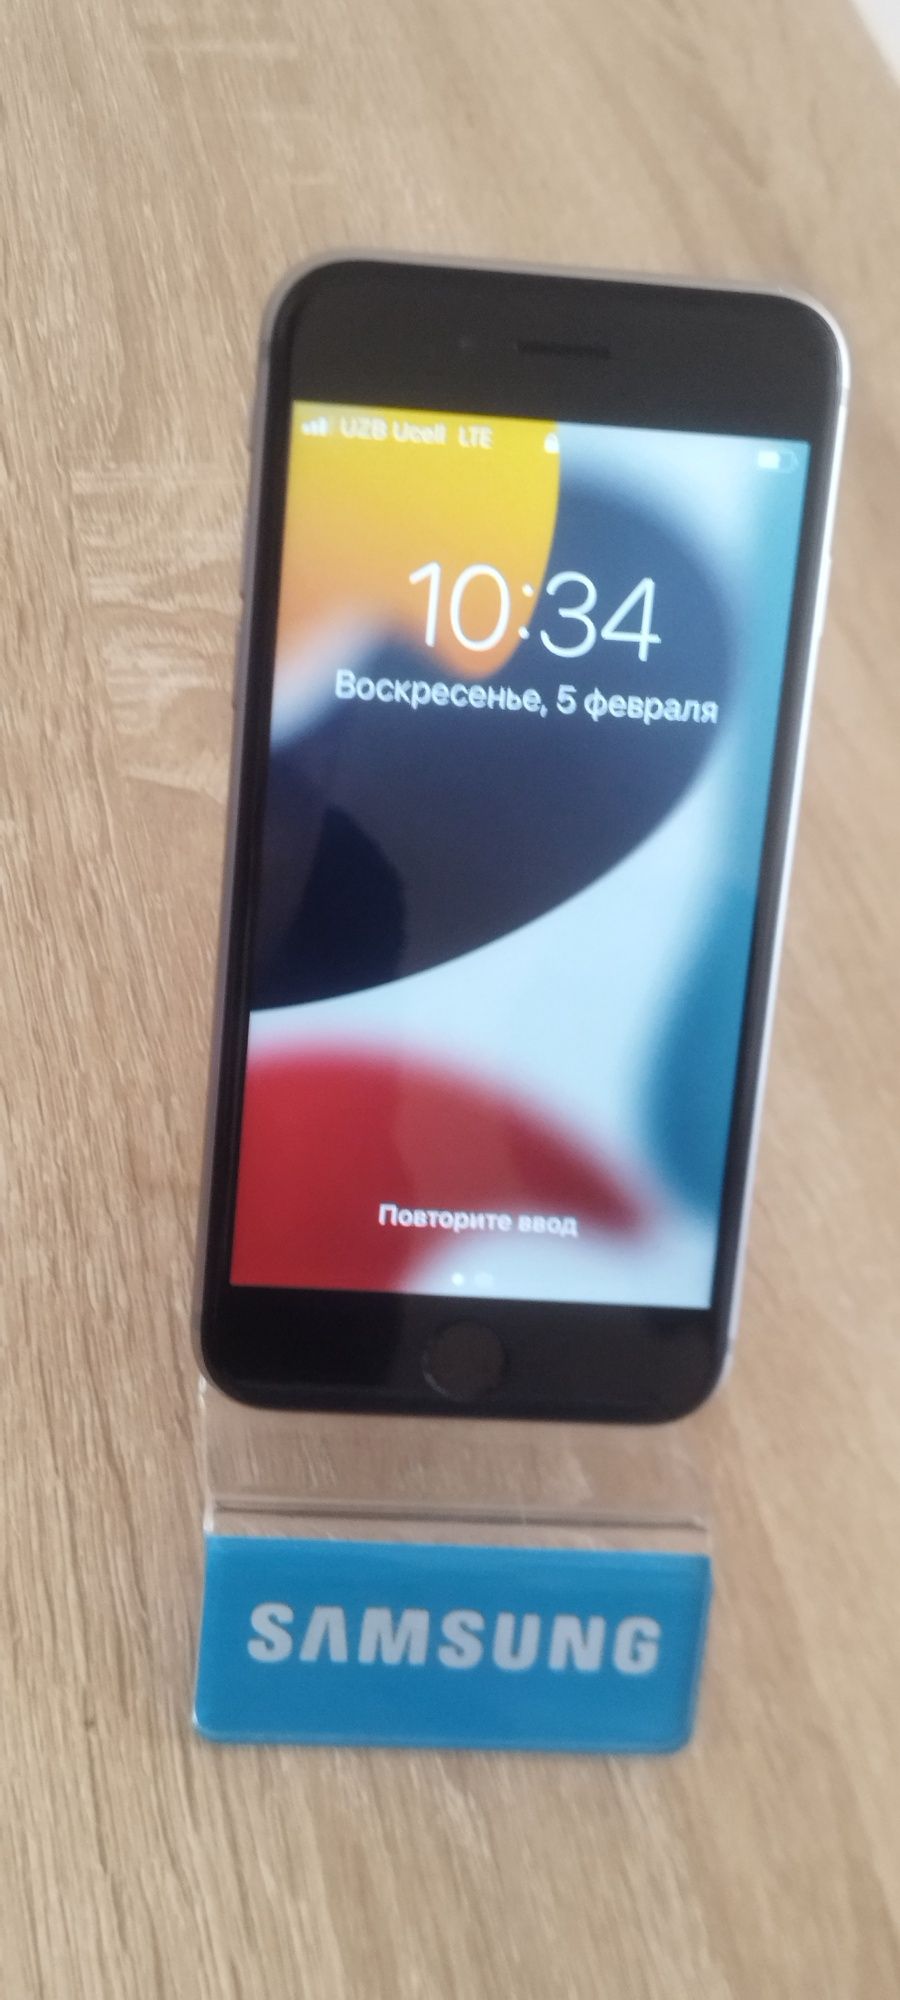 Iphone 6s 32gb holat ota gozal